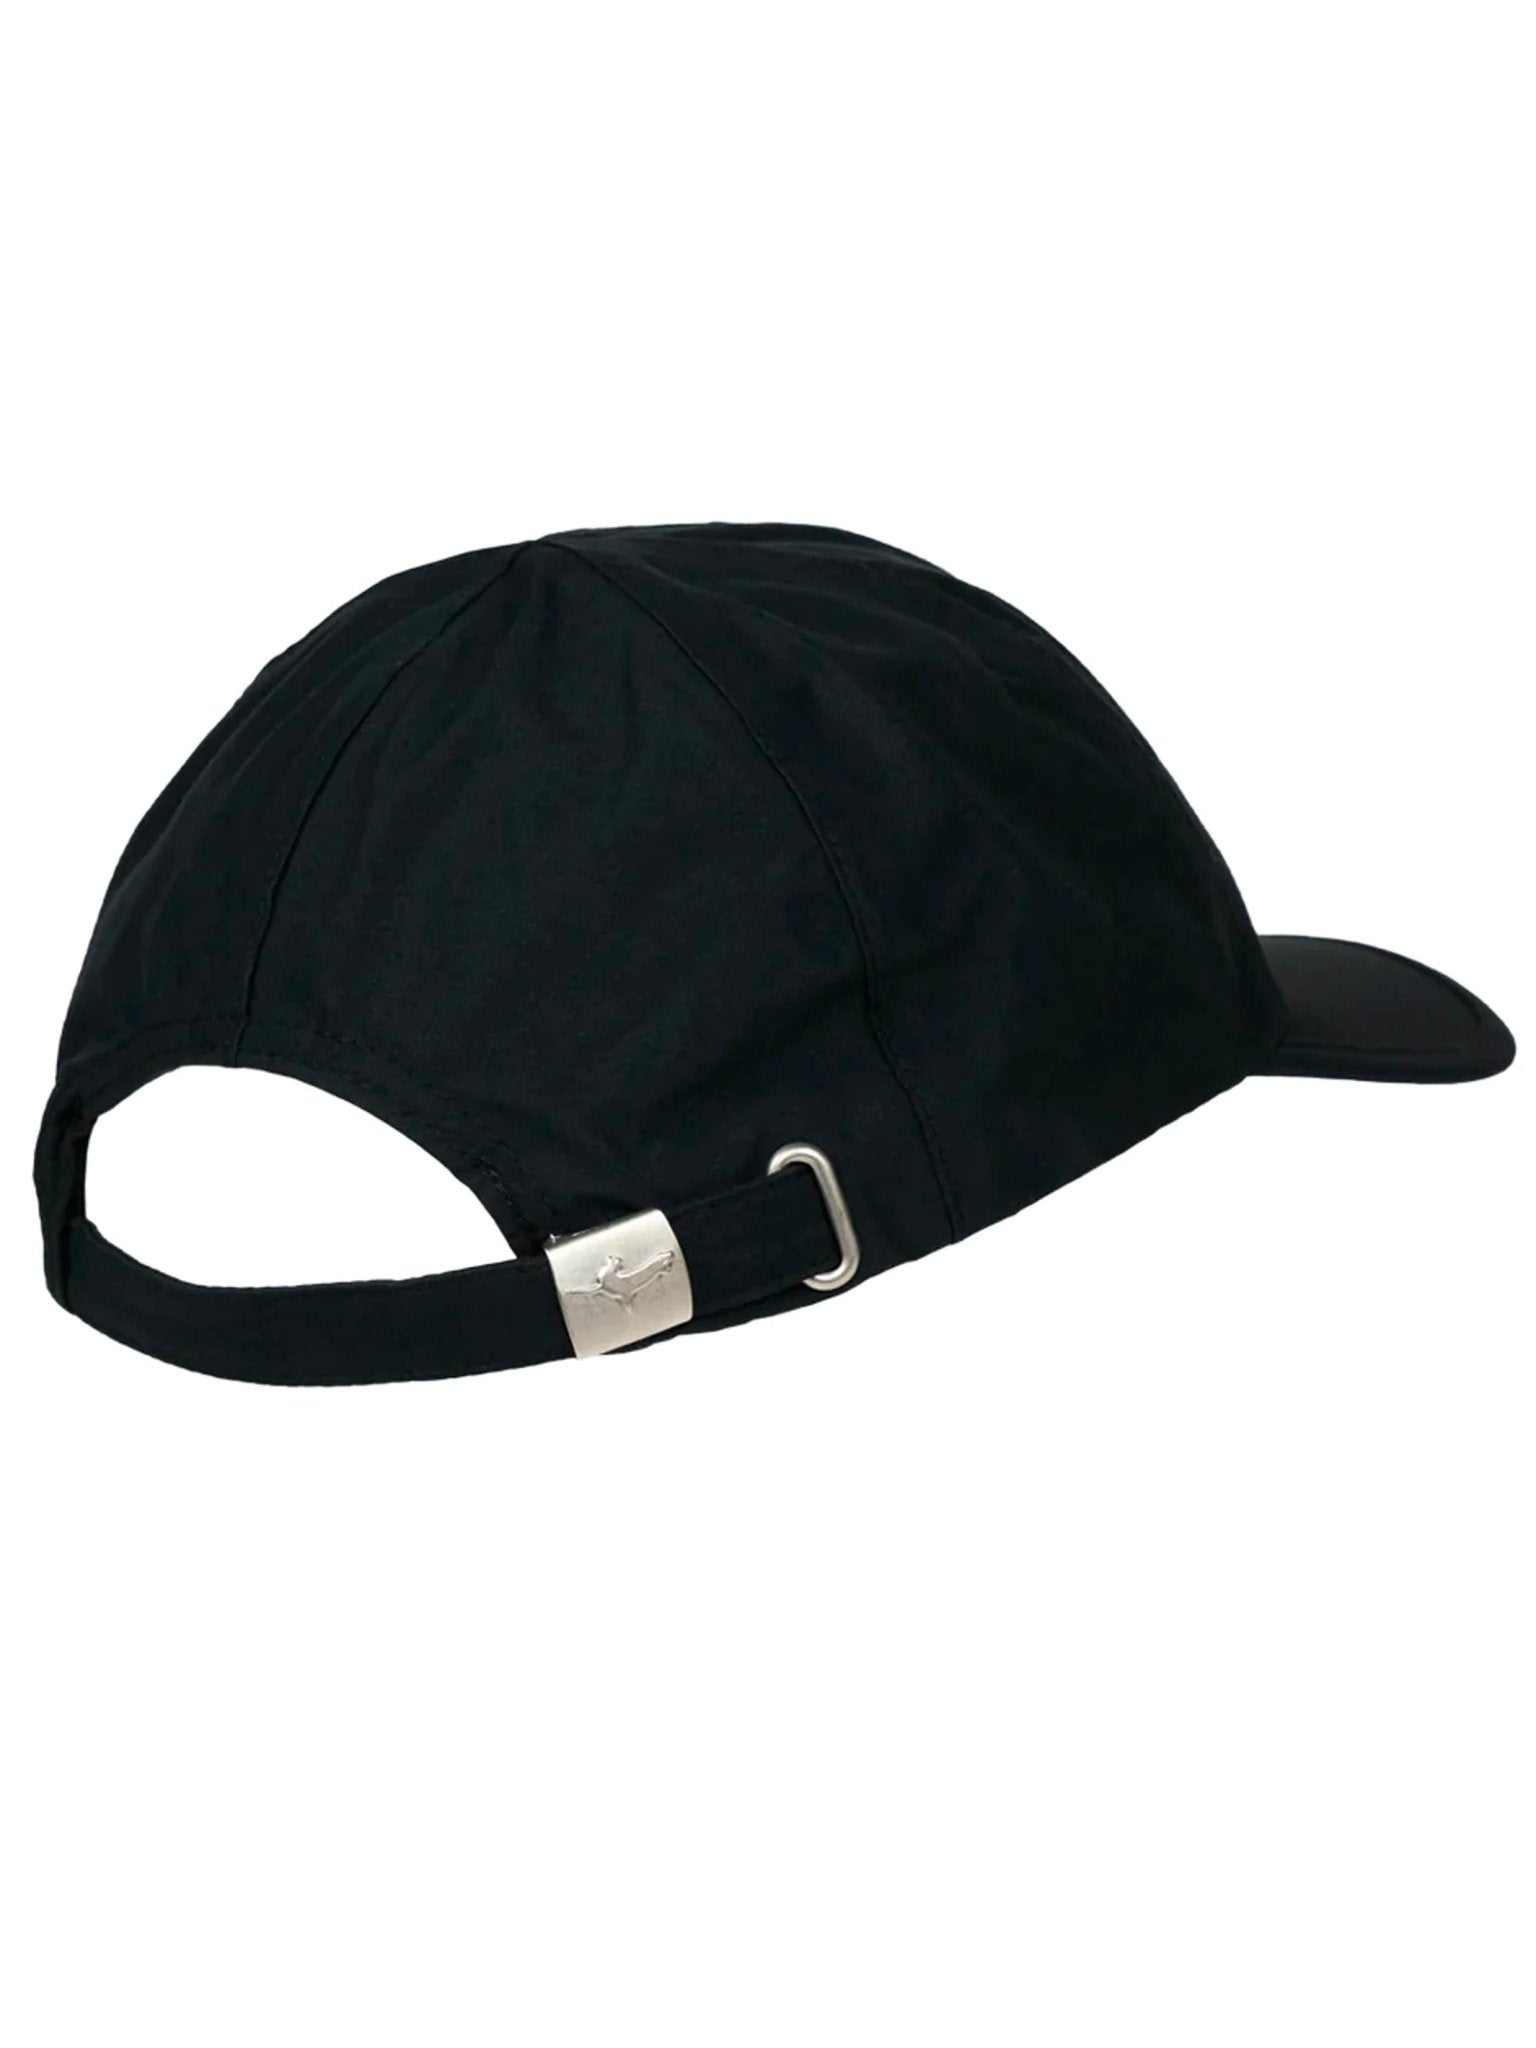 4elementsclothingSealSkinzSealskinz - Waterproof Windproof Hat / Peaked Cap / Baseball cap - LanghamHats5055754430417